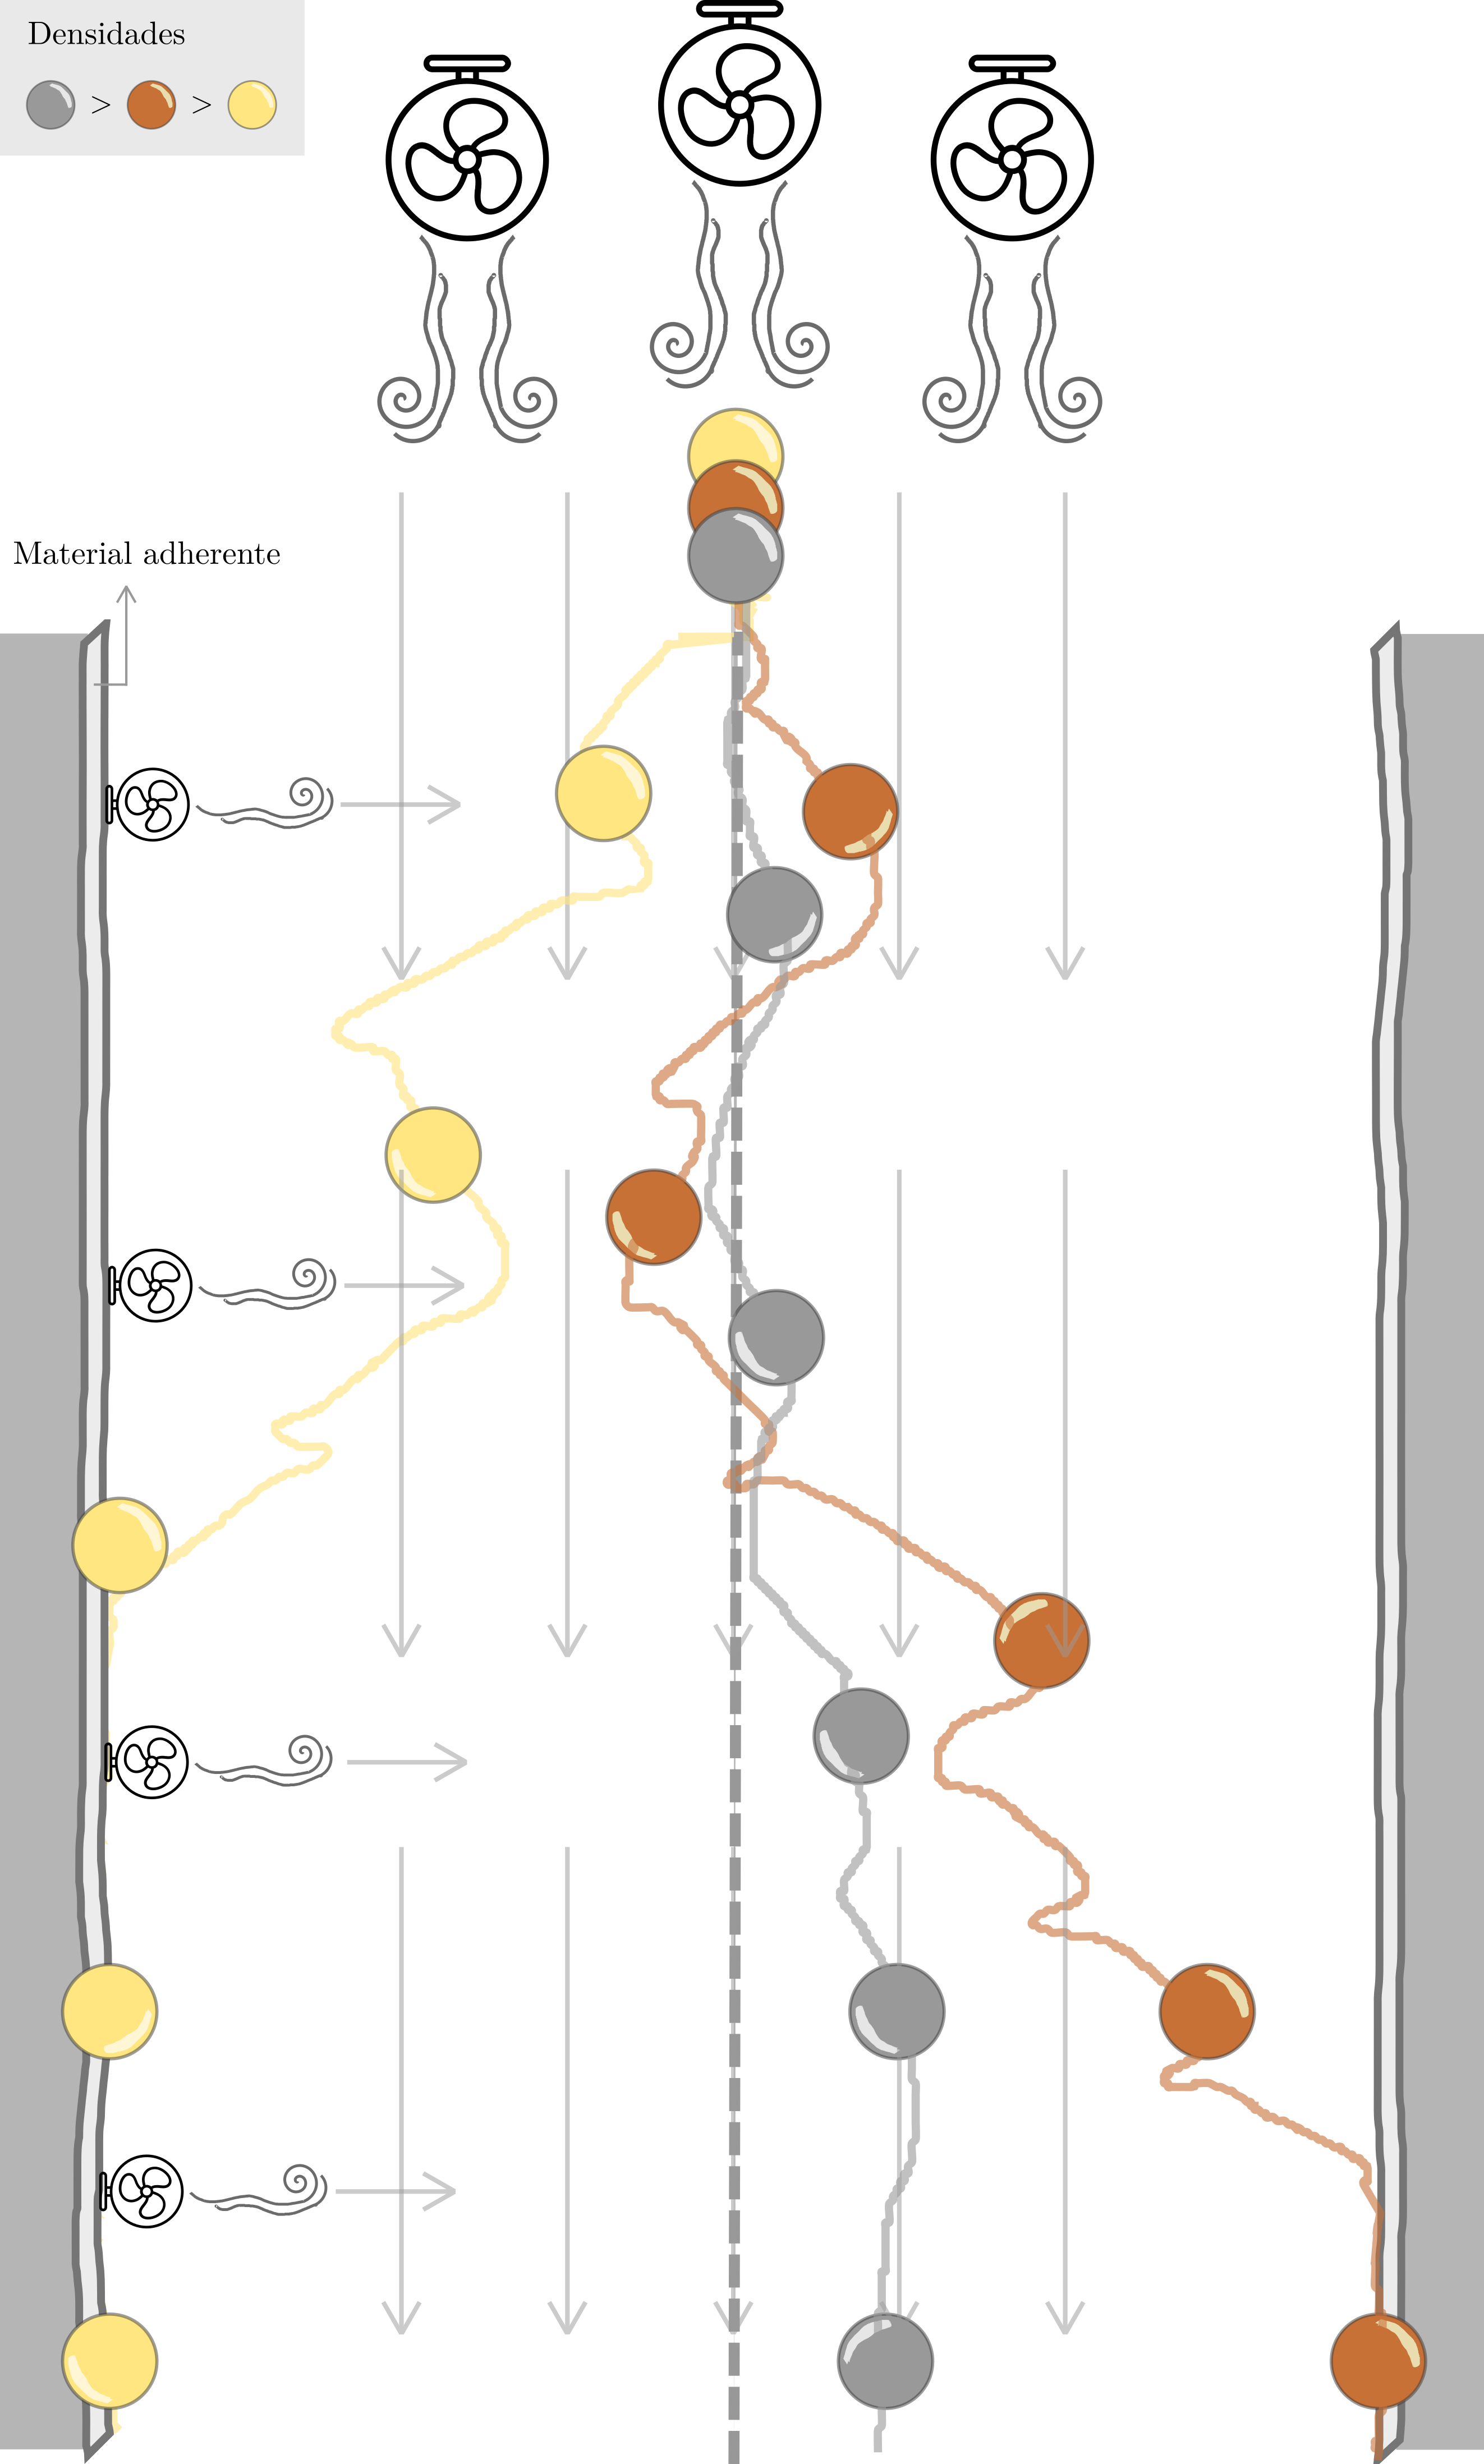 Diagrama que representa posibles trayectorias de bolitas de diferente densidad (\textit{e.g} una pelotita de ping-pong, una de madera y una de metal) al ingresar a un tubo de viento con un sistema de ventilación interno. El sistema cuenta a su vez con un material adherente sus costados, por lo que las bolitas que entren en contacto con el borde continuarán su trayectoria sobre él. Dos efectos superpuestos influyen sobre la trayectoria de cada bolita: a) el flujo de viento a través del tubo, generado por ventiladores superiores, y b) una corriente de menor intensidad, de izquierda a derecha, generada por un sistema de ventilación interno. El efecto del flujo de viento superior es aleatorio respecto al plano horizontal, pudiendo cada bolita desplazarse a cada lado con igual probabilidad debido a este estímulo. En cambio, el efecto de la ventilación interna es sistemático, favoreciendo un movimiento de izquierda a derecha en cada bolita. Según su densidad, cada bolita responderá a estos estímulos de manera diferente. Notemos como en el ejemplo la bolita de ping-pong se inclinó tempranamente hacia la izquierda, lo cual favoreció su contacto con dicho borde. Las otras bolitas (de mayor densidad), presentan menores varianzas respecto a su movimiento horizontal.